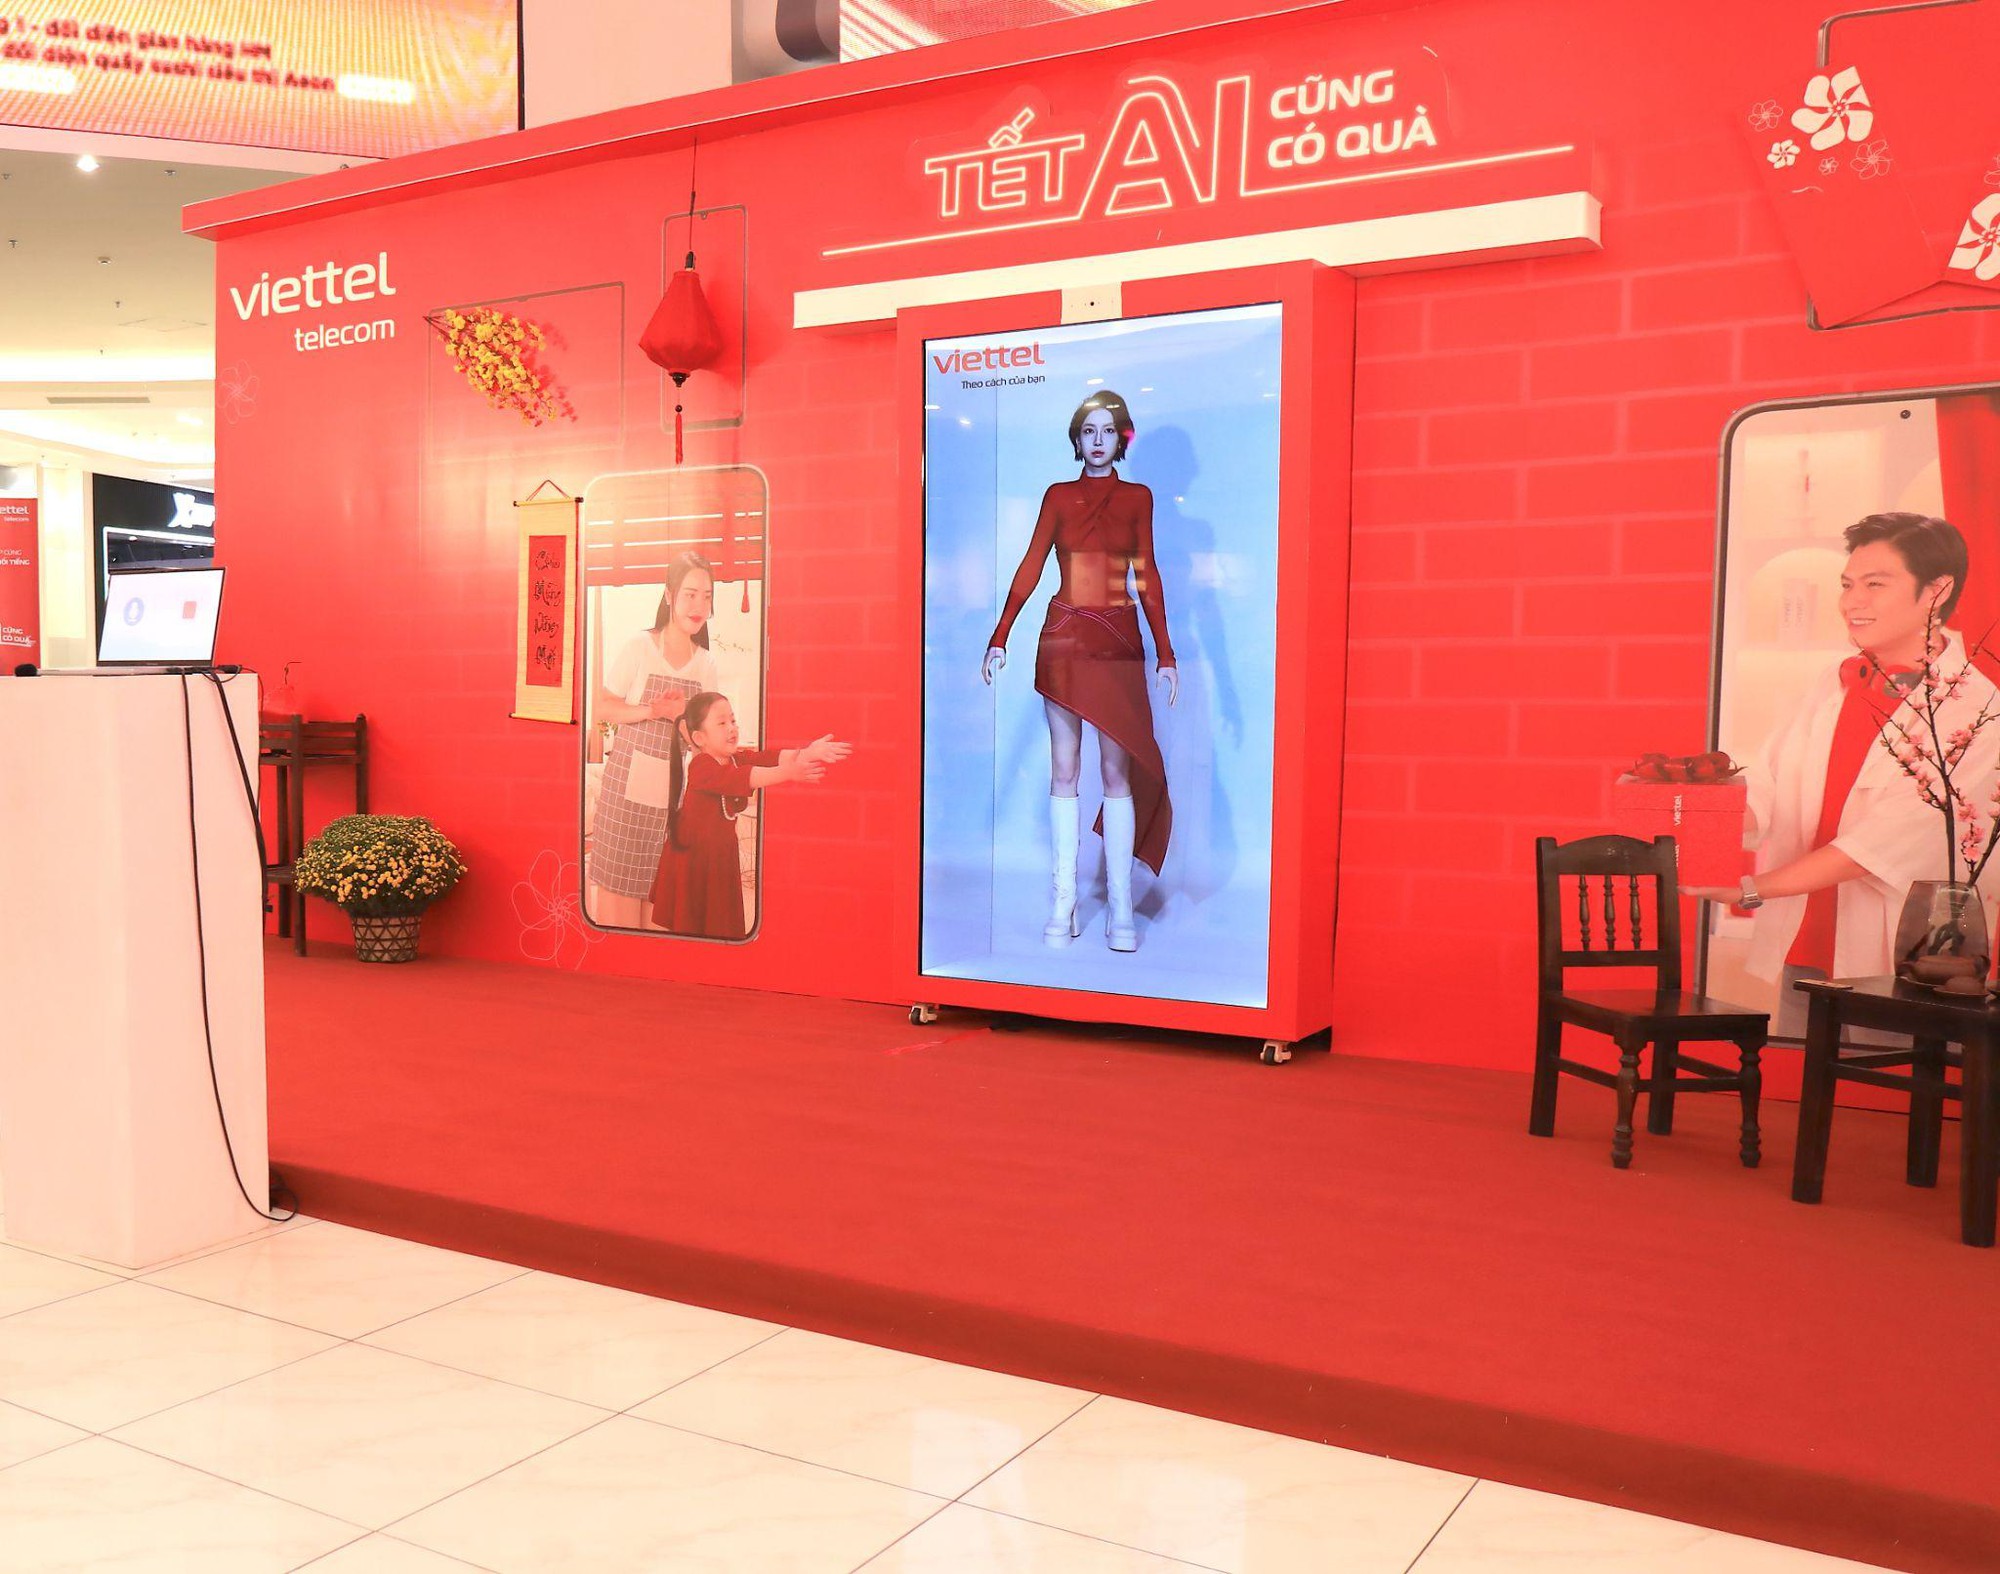 Gặp người ảo AI của Viettel khuấy động AEON Mall - Ảnh 1.